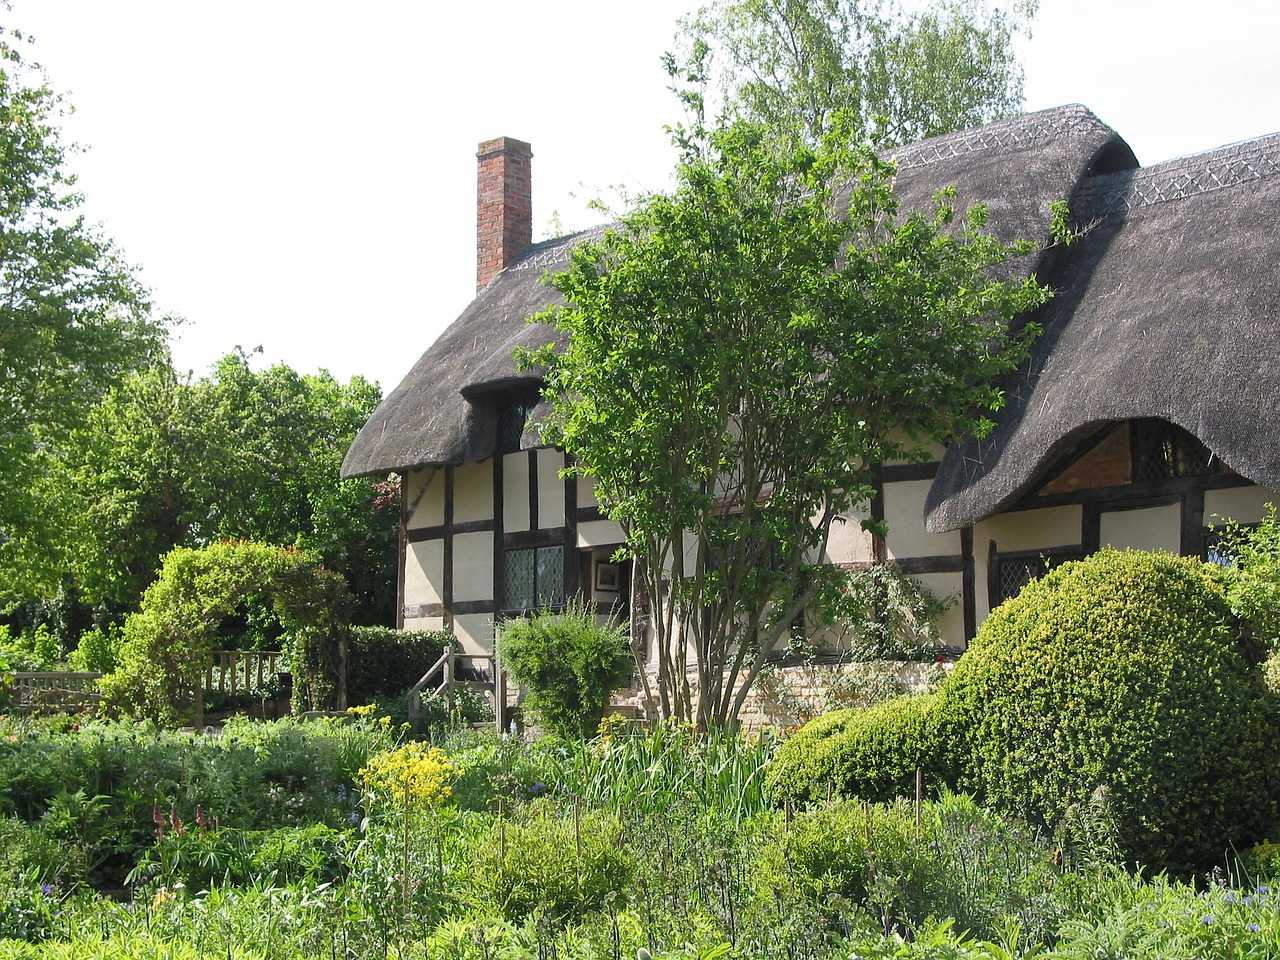 Anne Hathaway’s Cottage (Sandy Dewar / Pixabay]